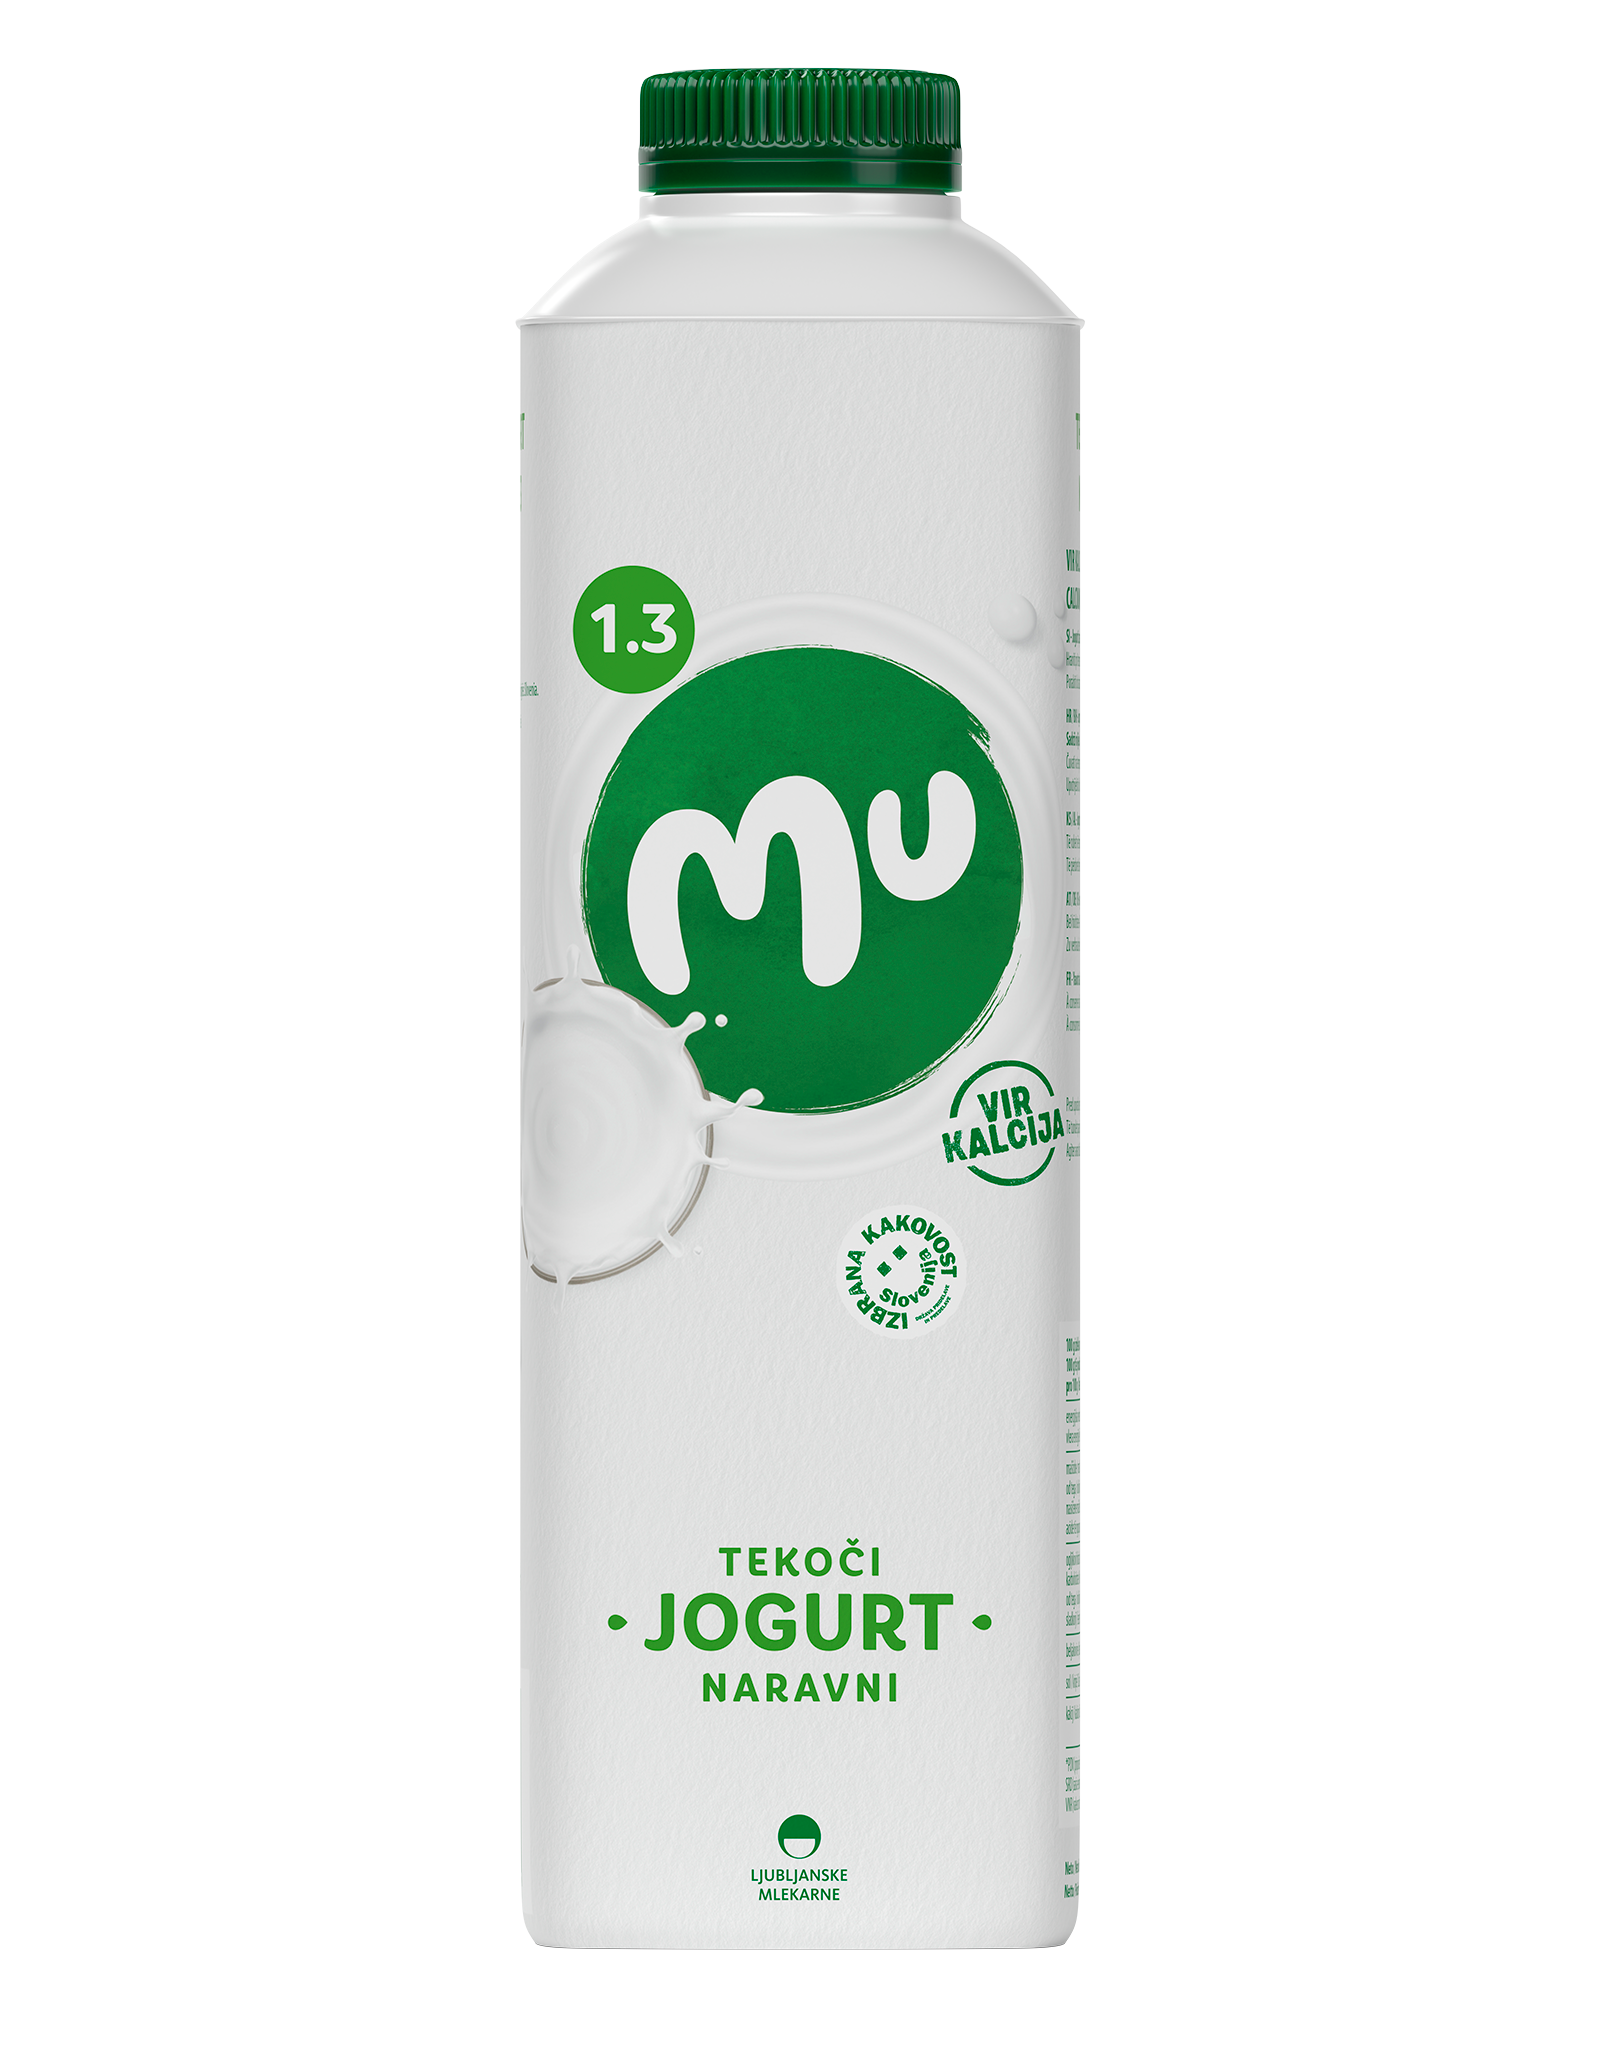 Mu naravni tekoči jogurt z 1,3 % m. m.: TT